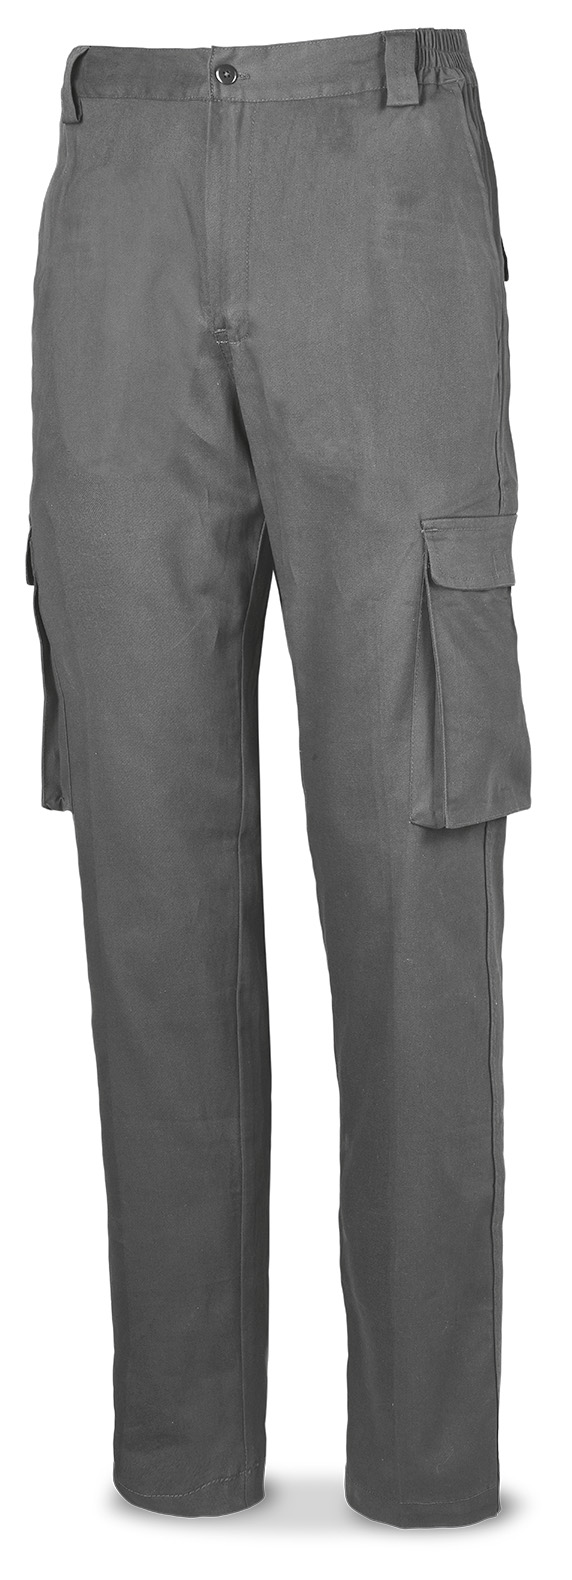 588-PBSG Vestuario Laboral Serie Casual Pantalón STRETCH básico. Color gris.